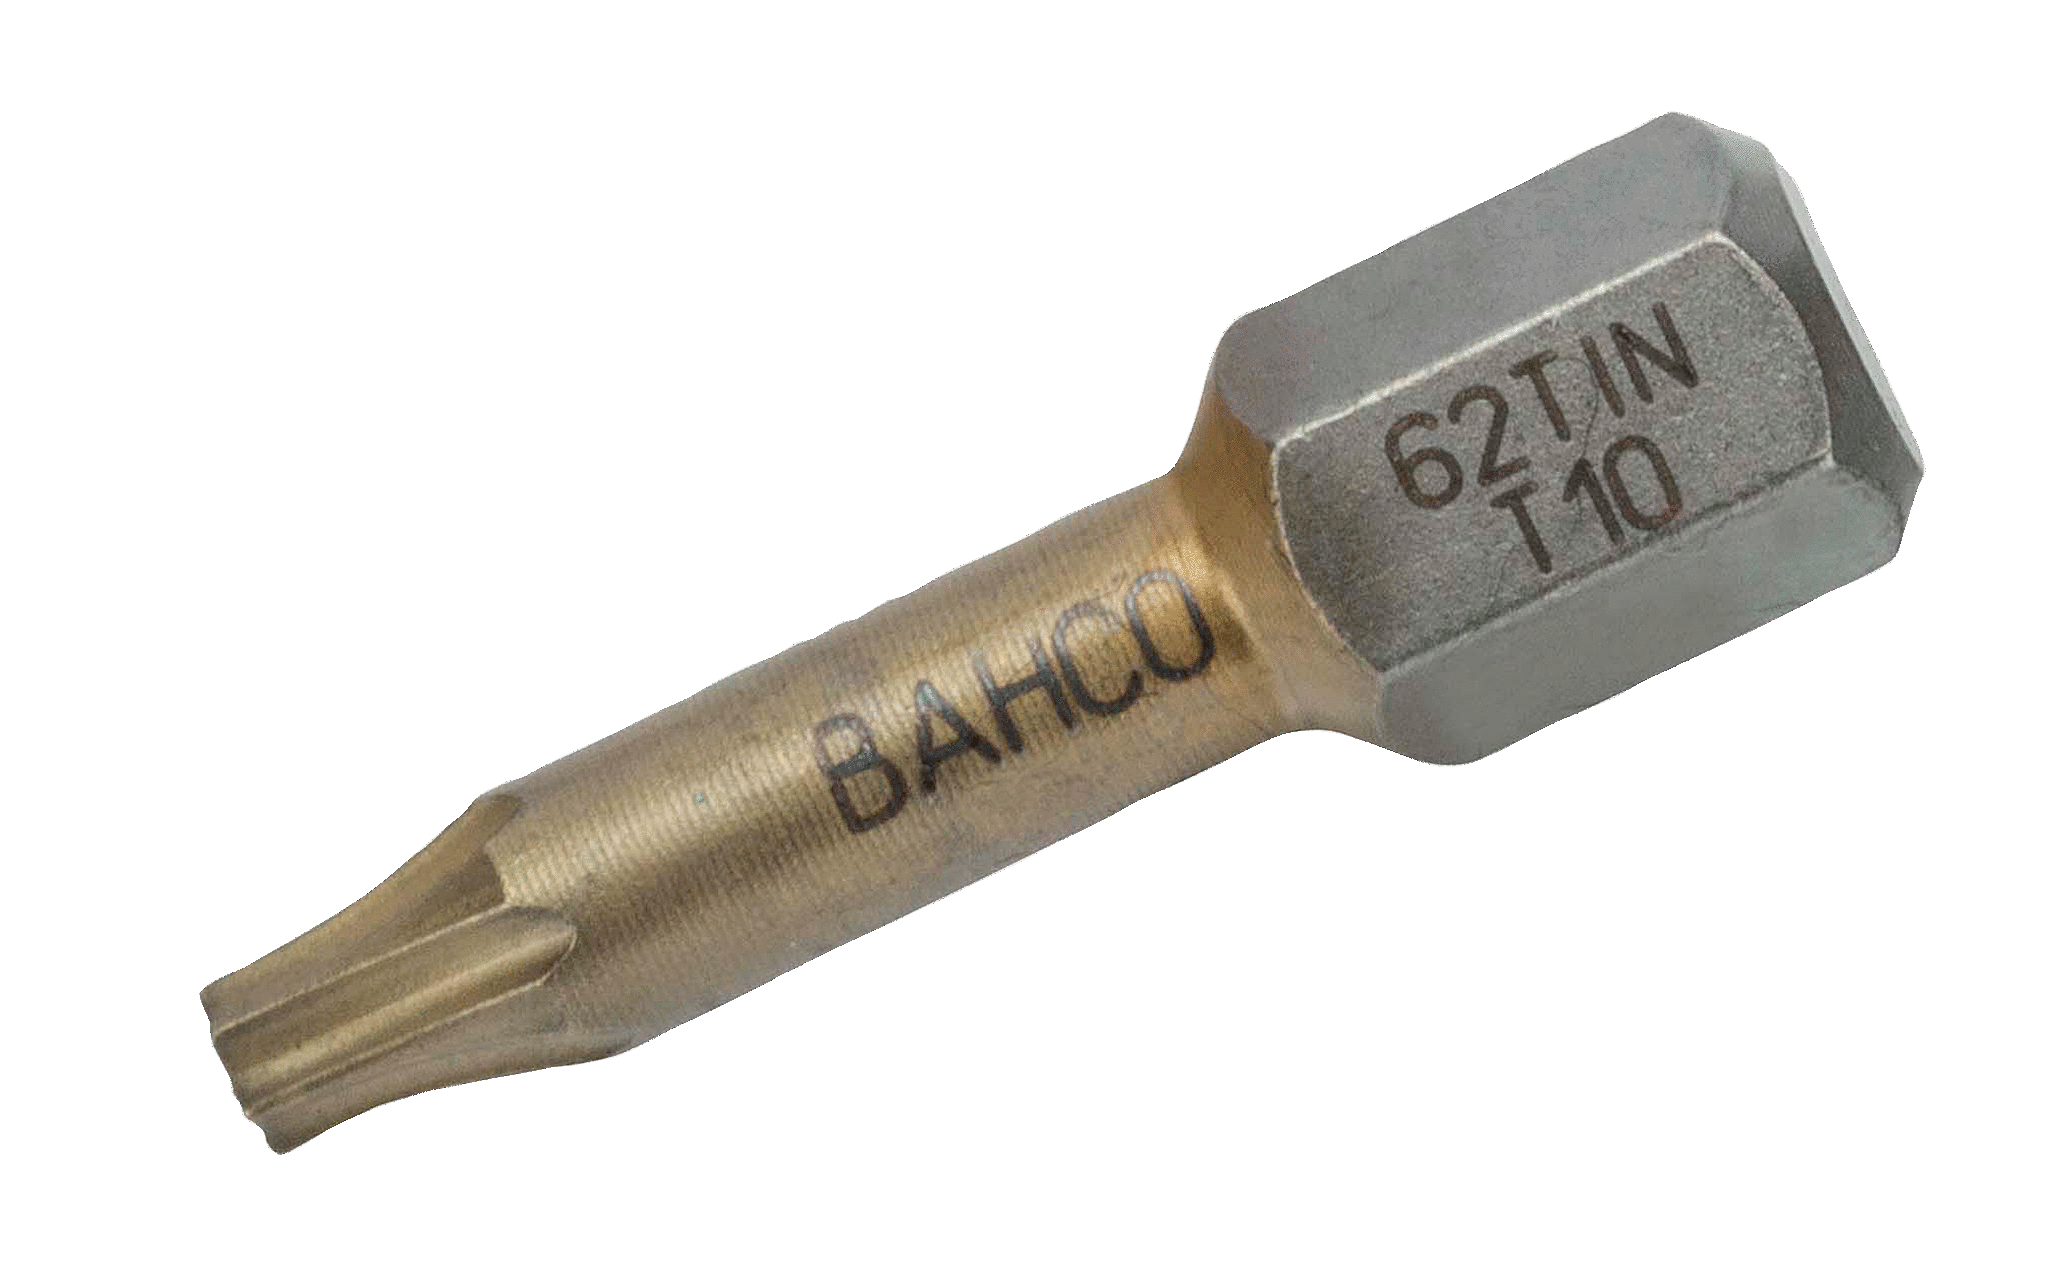 картинка Торсионные биты с покрытием из нитрида титана для отверток Torx®, 25 мм BAHCO 62TIN/T30 от магазина "Элит-инструмент"